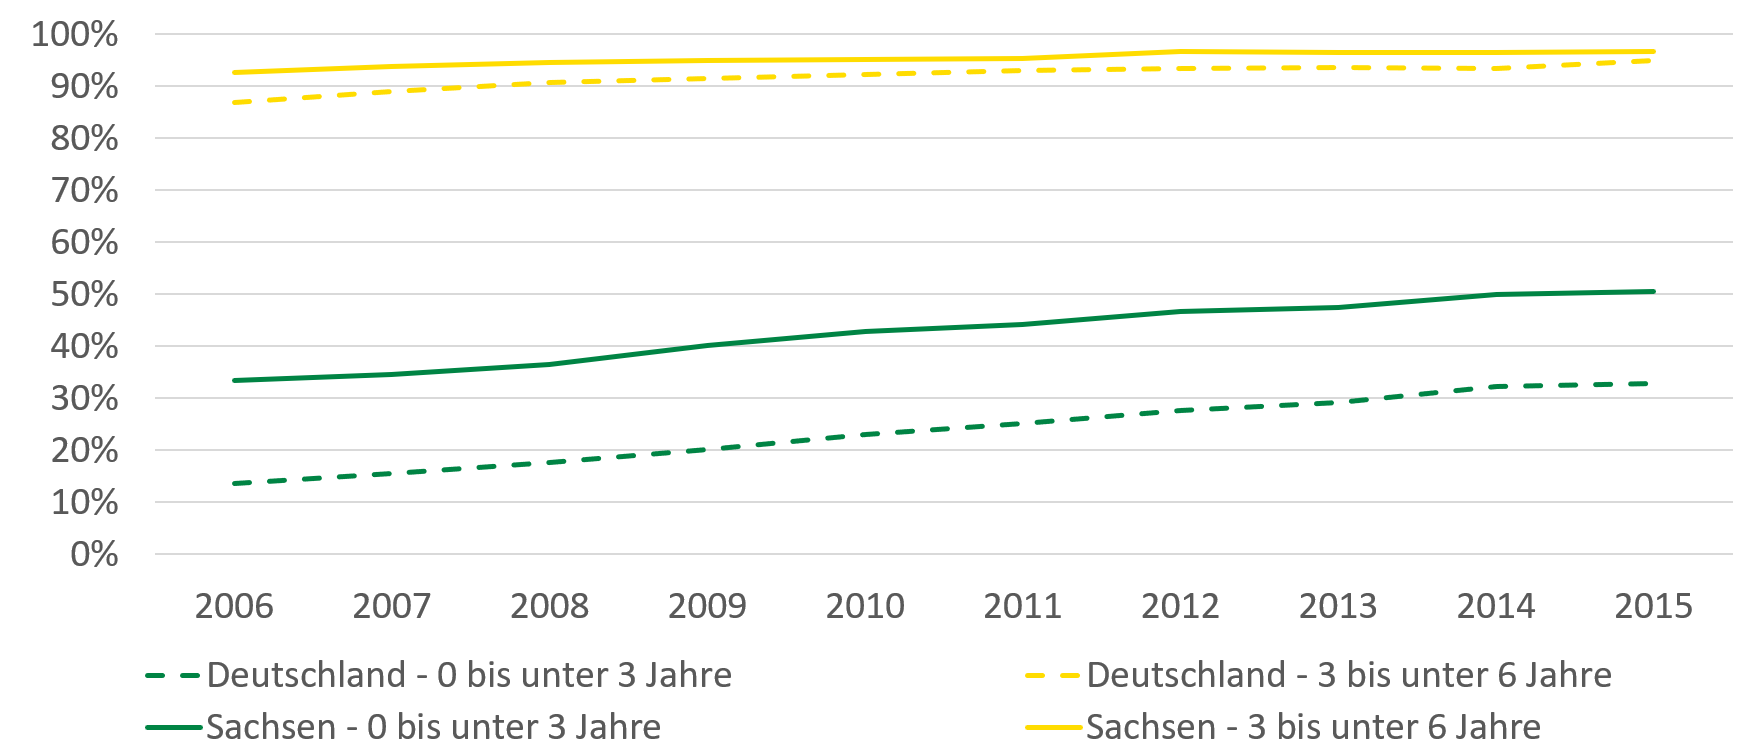 Im Jahr 2006 wurden bundesweit etwas mehr als 10 Prozent der unter Dreijährigen betreut, die Betreuungsquote der unter Dreijährigen lag für Sachsen fast dreimal höher. Bei der Gruppe der 3-6-Jährigen liegt die Quote für Deutschland knapp unter 90 Prozent, für Sachsen fällt sie minimal höher aus und liegt über 90 Prozent. 2015 werden in Deutschland bereits mehr als 30 Prozent der unter 3-Jährigen betreut und in Sachsen sind es über 50 Prozent. Die Betreuungsquote der 3-6-Jährigen ist weniger stark gewachsen, bundesweit liegt sie bei rund 95 Prozent und sachsenweit strebt sie gegen 100 Prozent.